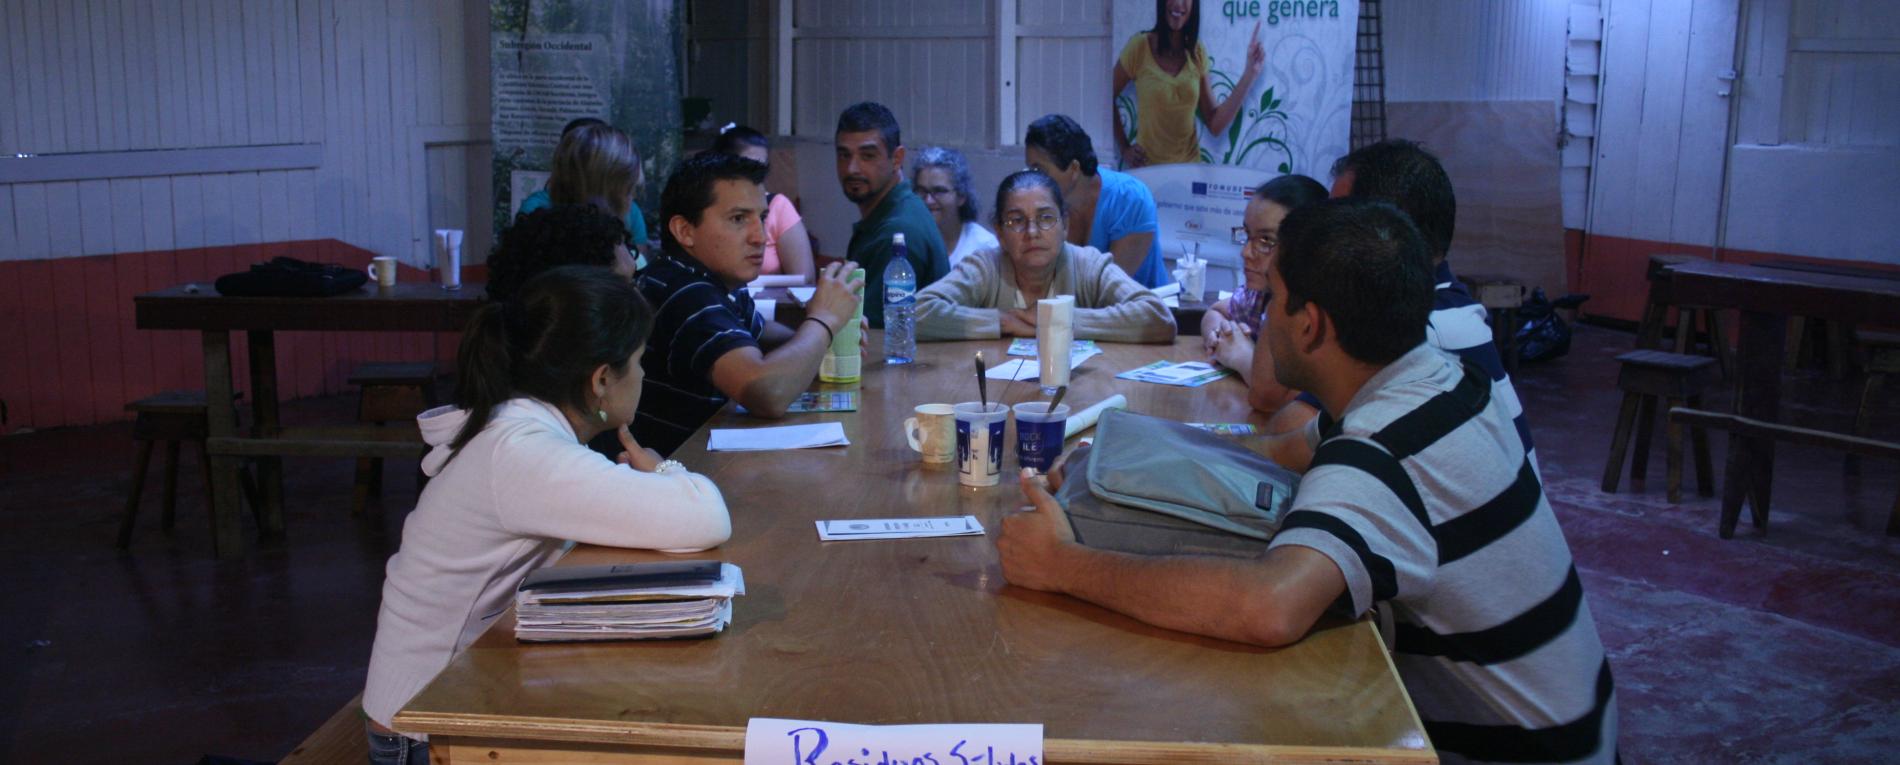 Sede organiza Feria Ecológica para la comunidad de Bajo Rodríguez